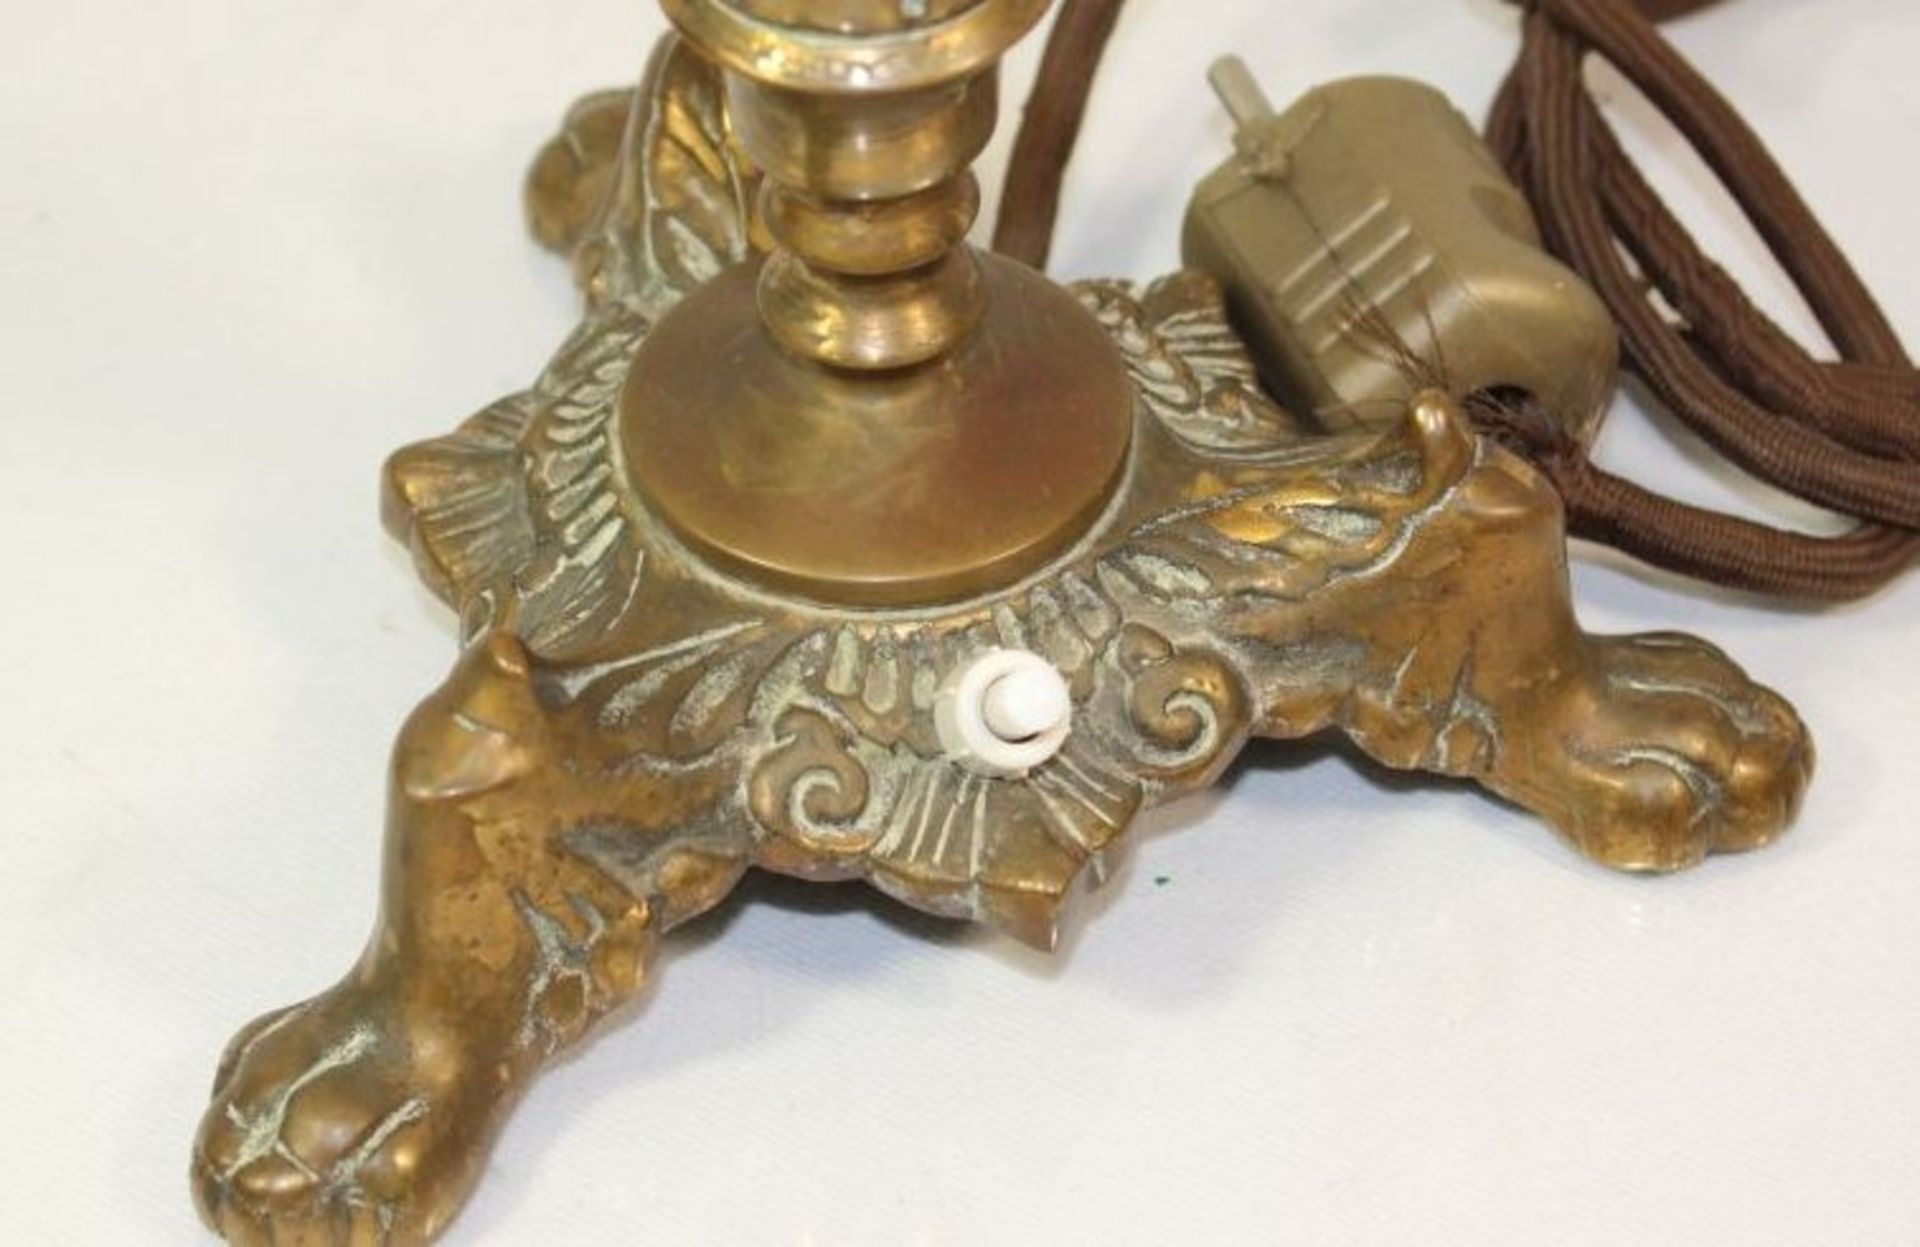 Tischlampe, Bronzestand, Michglasschirm dieser geklebt, H-48cm.- - -22.61 % buyer's premium on the - Bild 2 aus 2